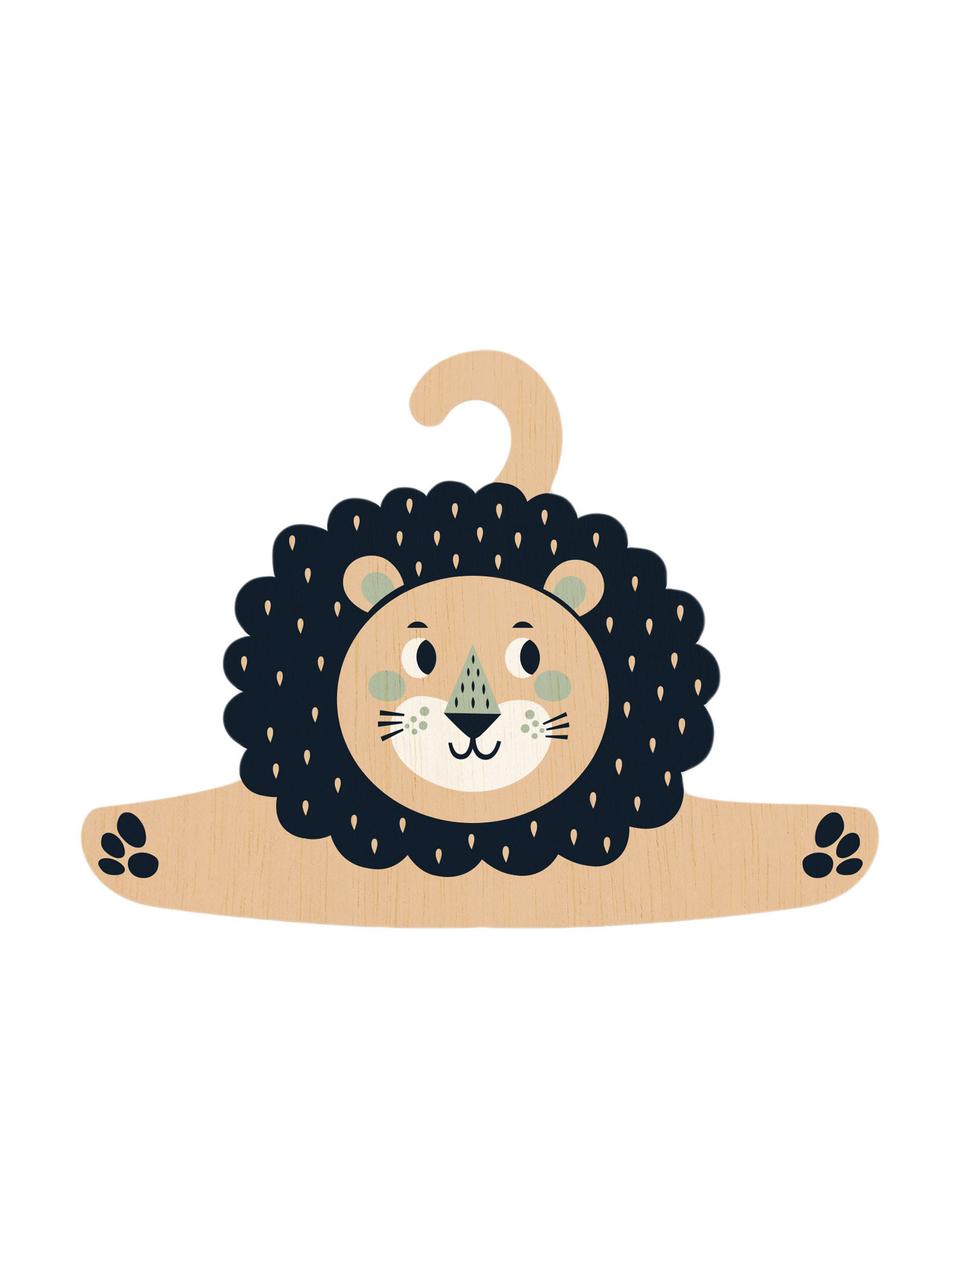 Ramínko Lion, Potažená překližka, Černá, béžová, mátově zelená, krémová, Š 30 cm, V 30 cm